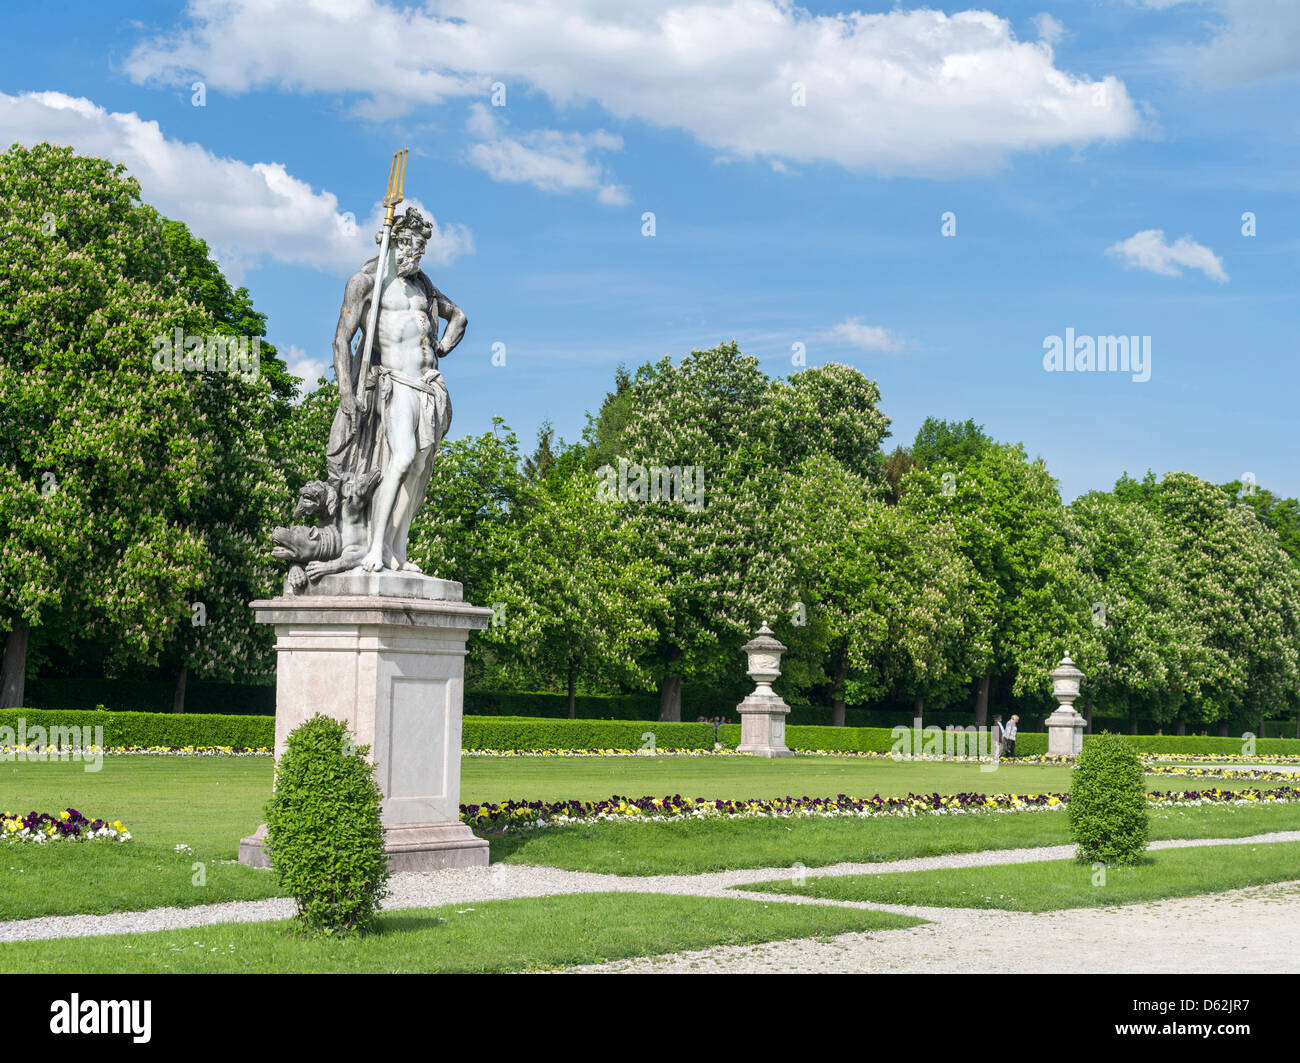 Germany, Bavaria, Munich. Le Palais Nymphenburg, avec son parc, jardins et canaux. Banque D'Images